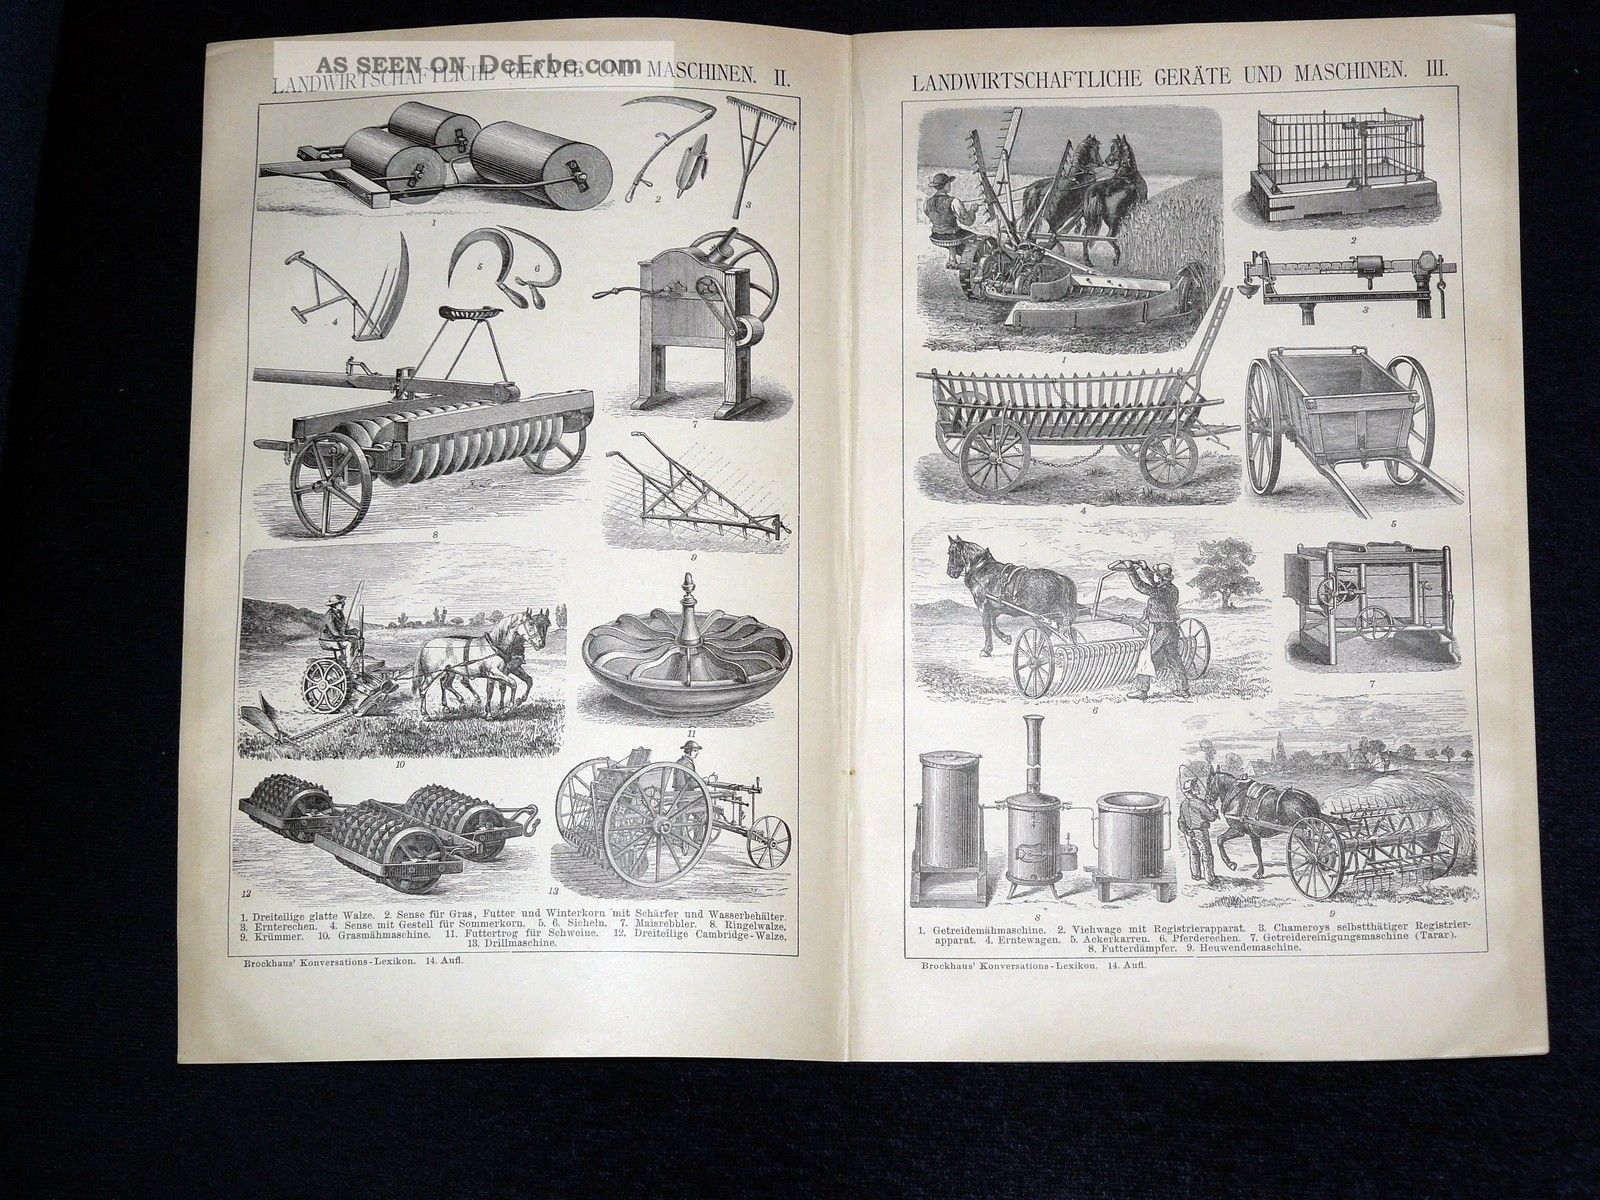 7 Originaldrucke Landwirtschaftliche Maschinen Und GerÄte Ii 1895,  Text Bauer Bild